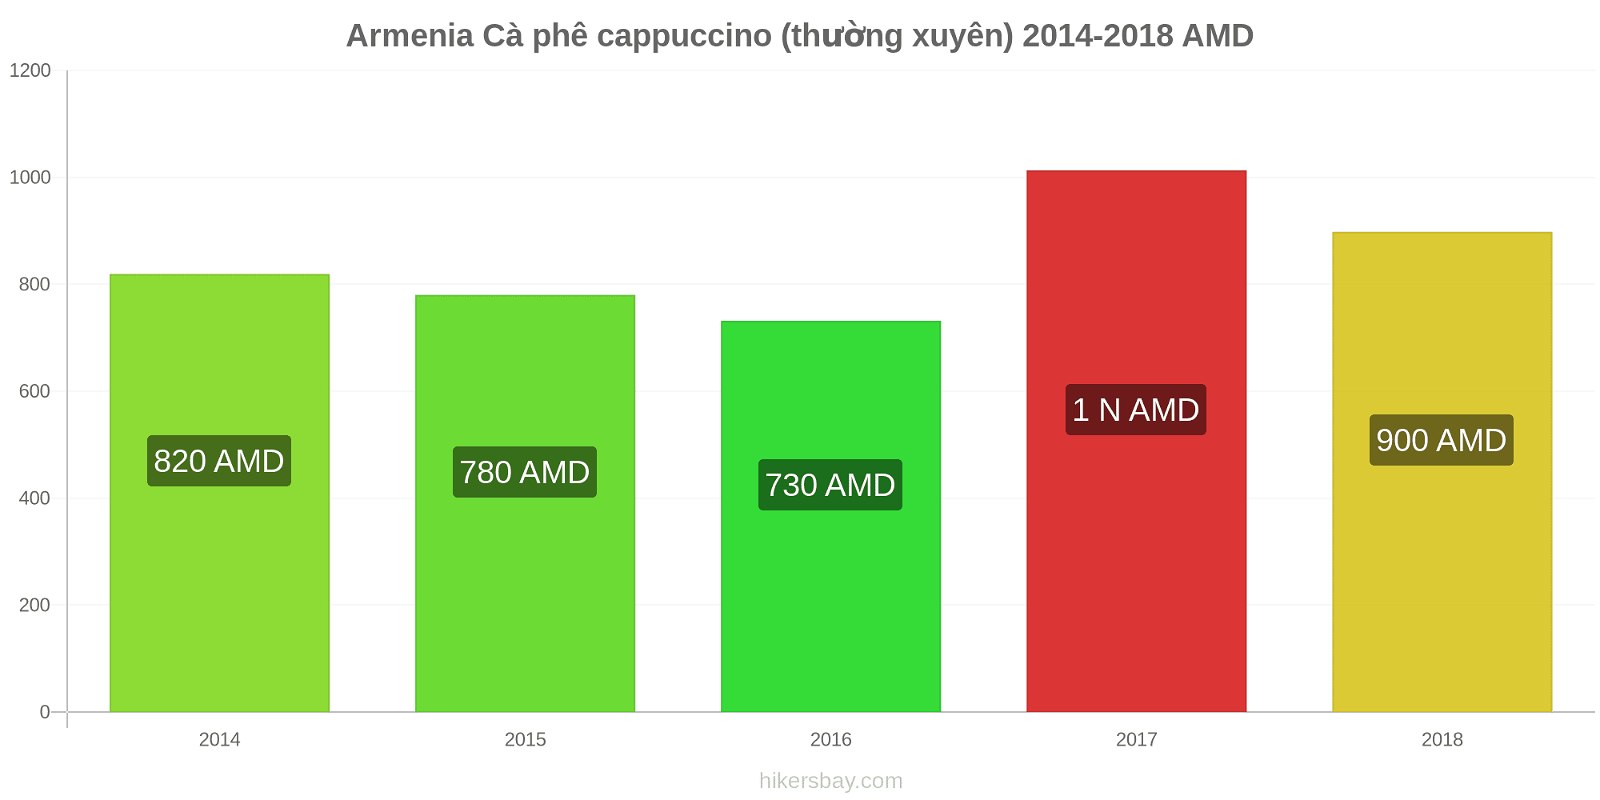 Armenia thay đổi giá cả Cà phê cappuccino hikersbay.com